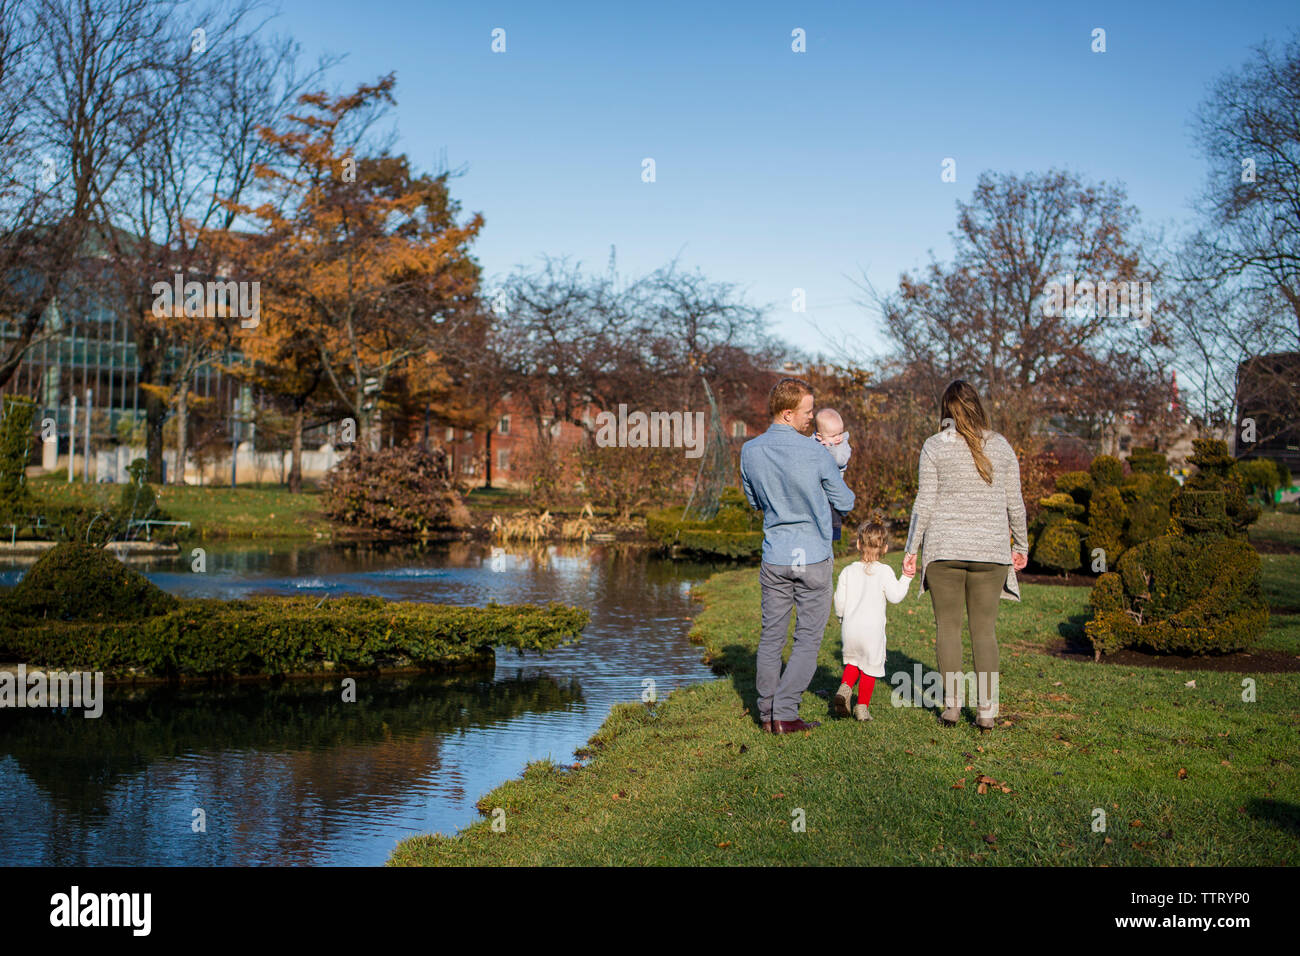 Vue de derrière une famille marcher ensemble dans un parc en automne Sunshine Banque D'Images